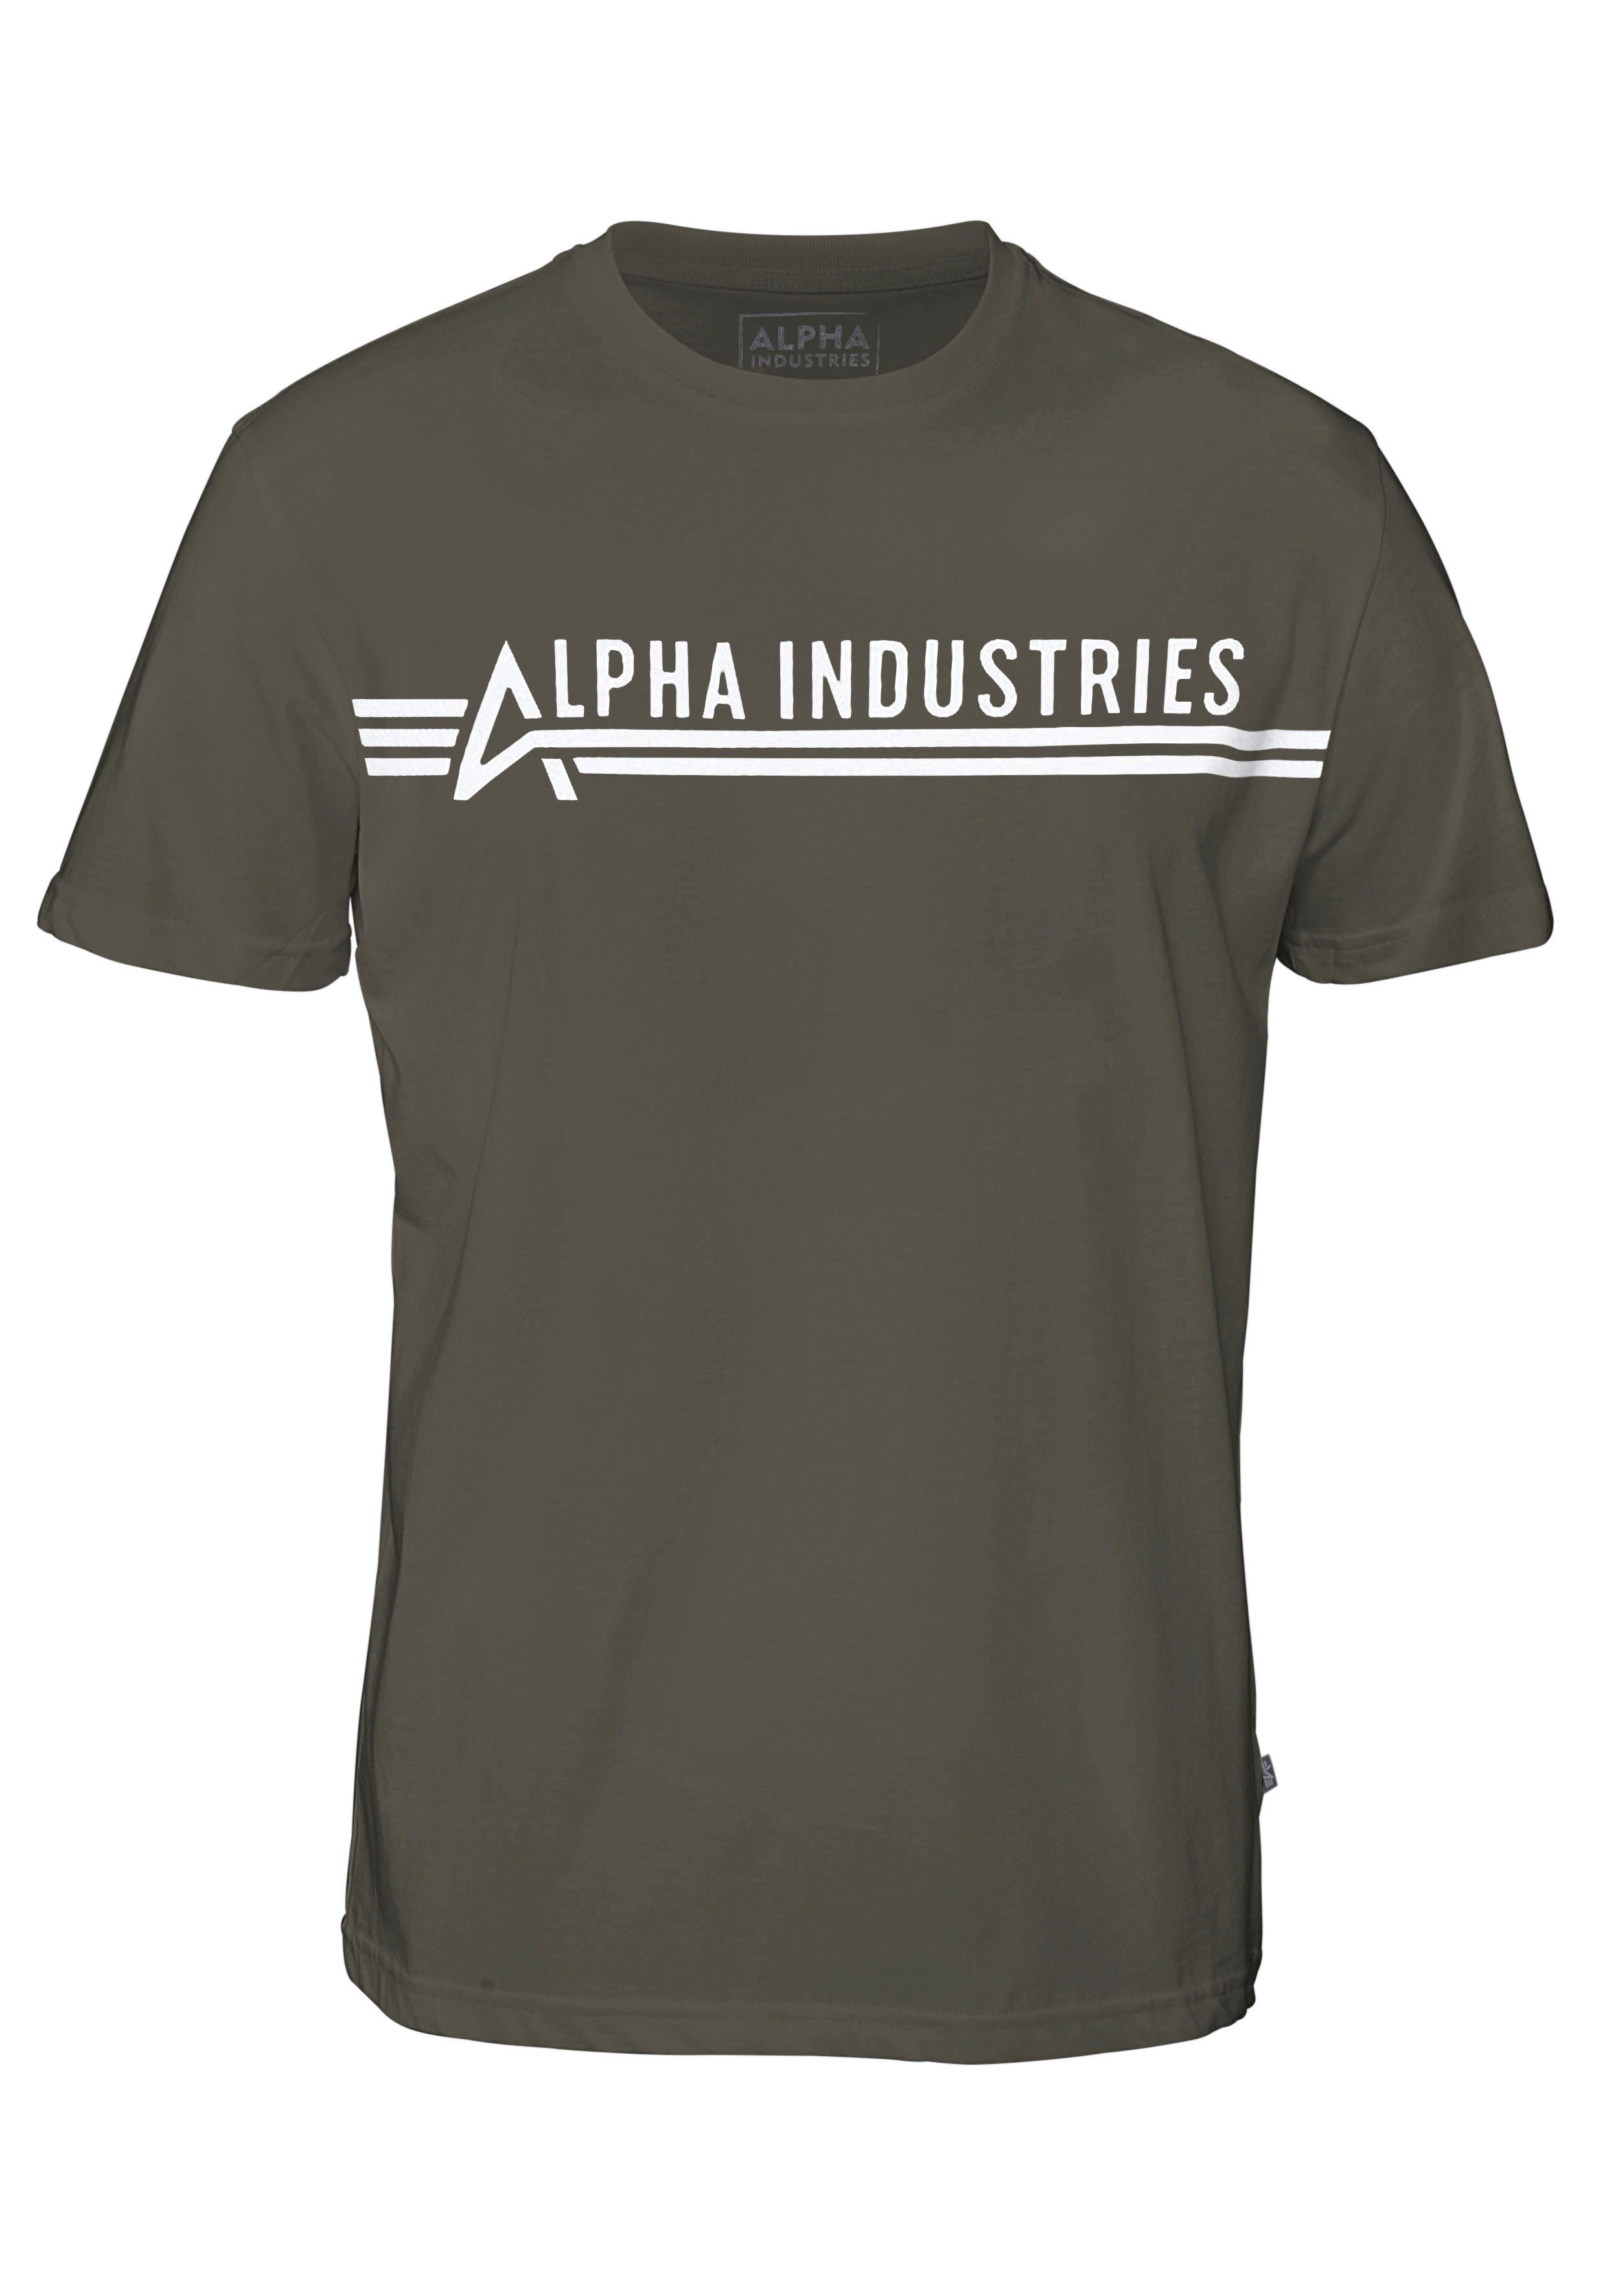 Rundhalsshirt ALPHA Alpha Industries T INDUSTRIES olivgrün